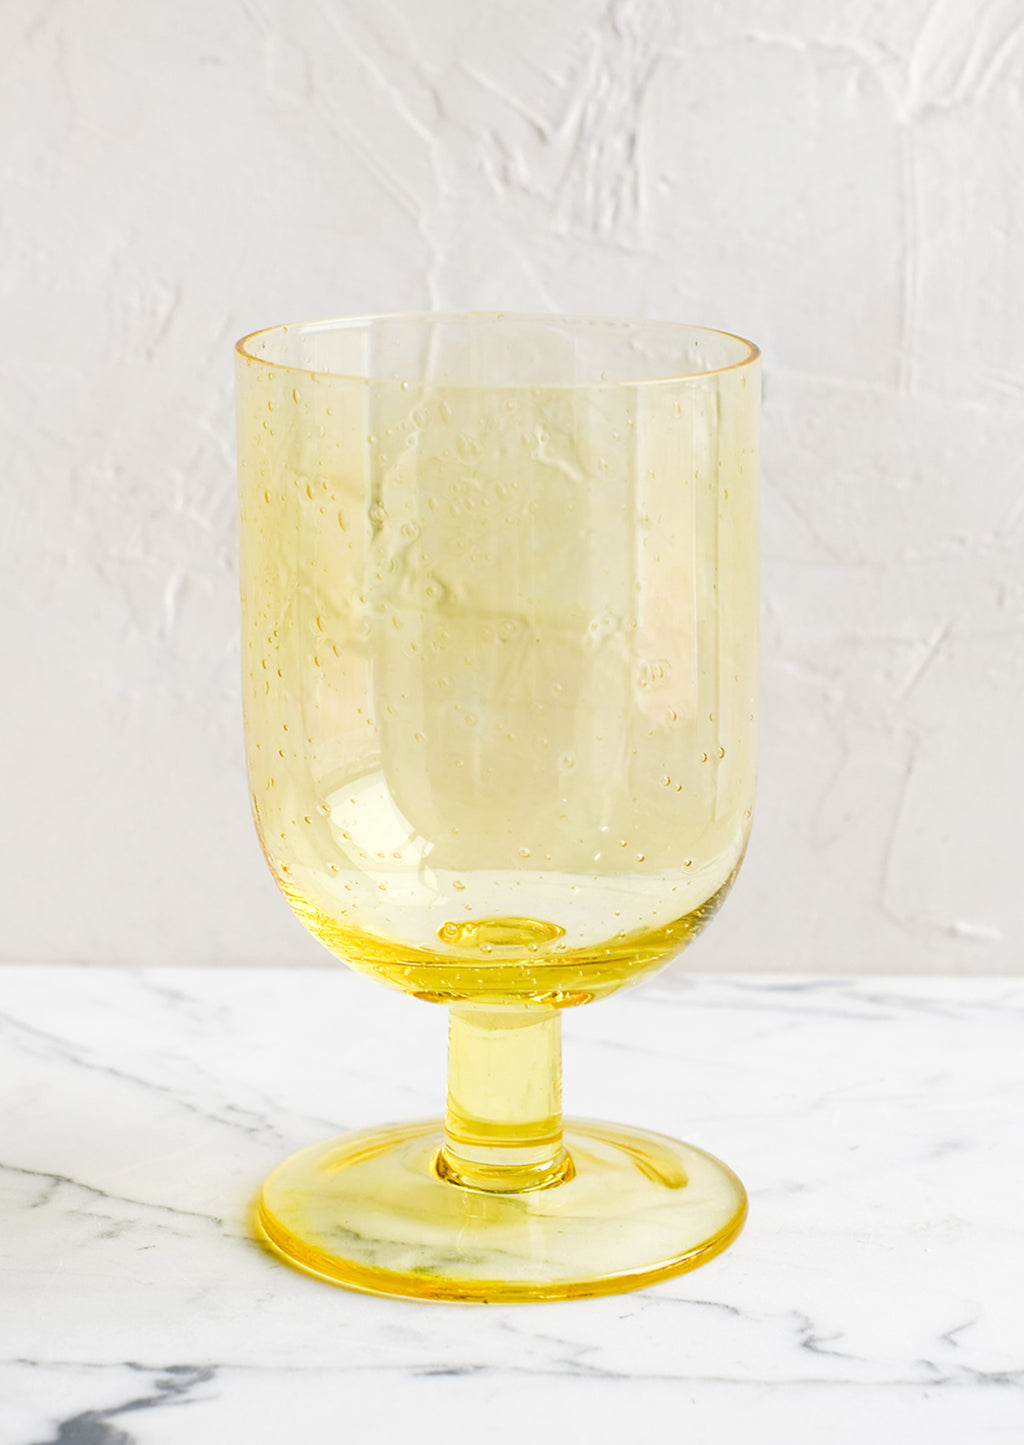 Lemon: A stemmed wine glass in yellow.